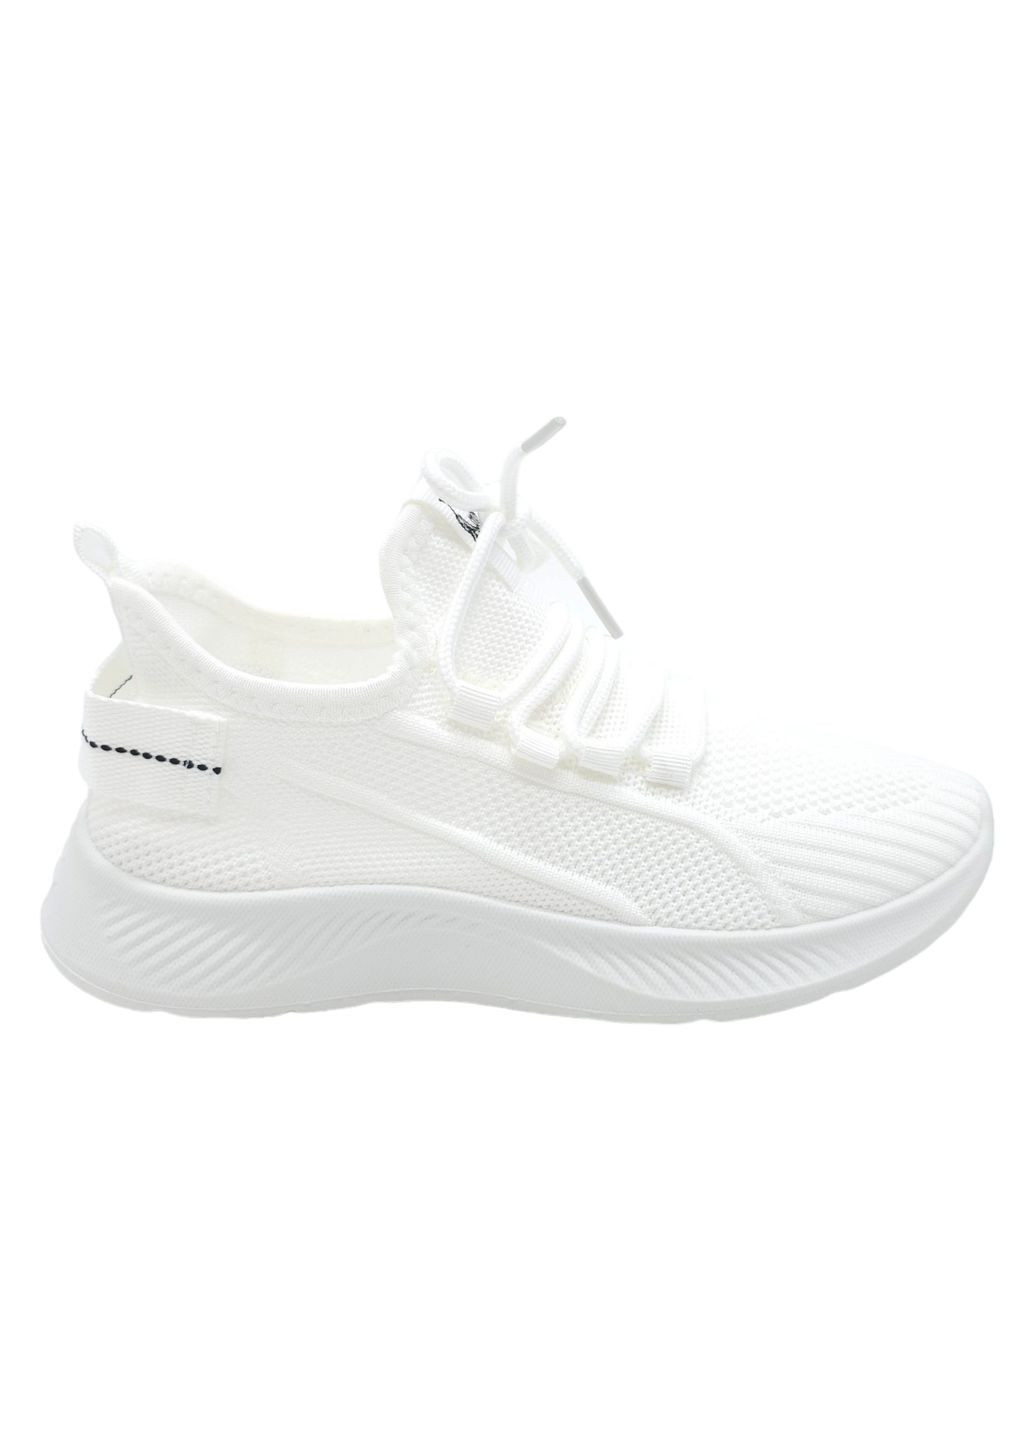 Белые всесезонные женские кроссовки белые текстиль l-16-39 23,5 см (р) Lonza